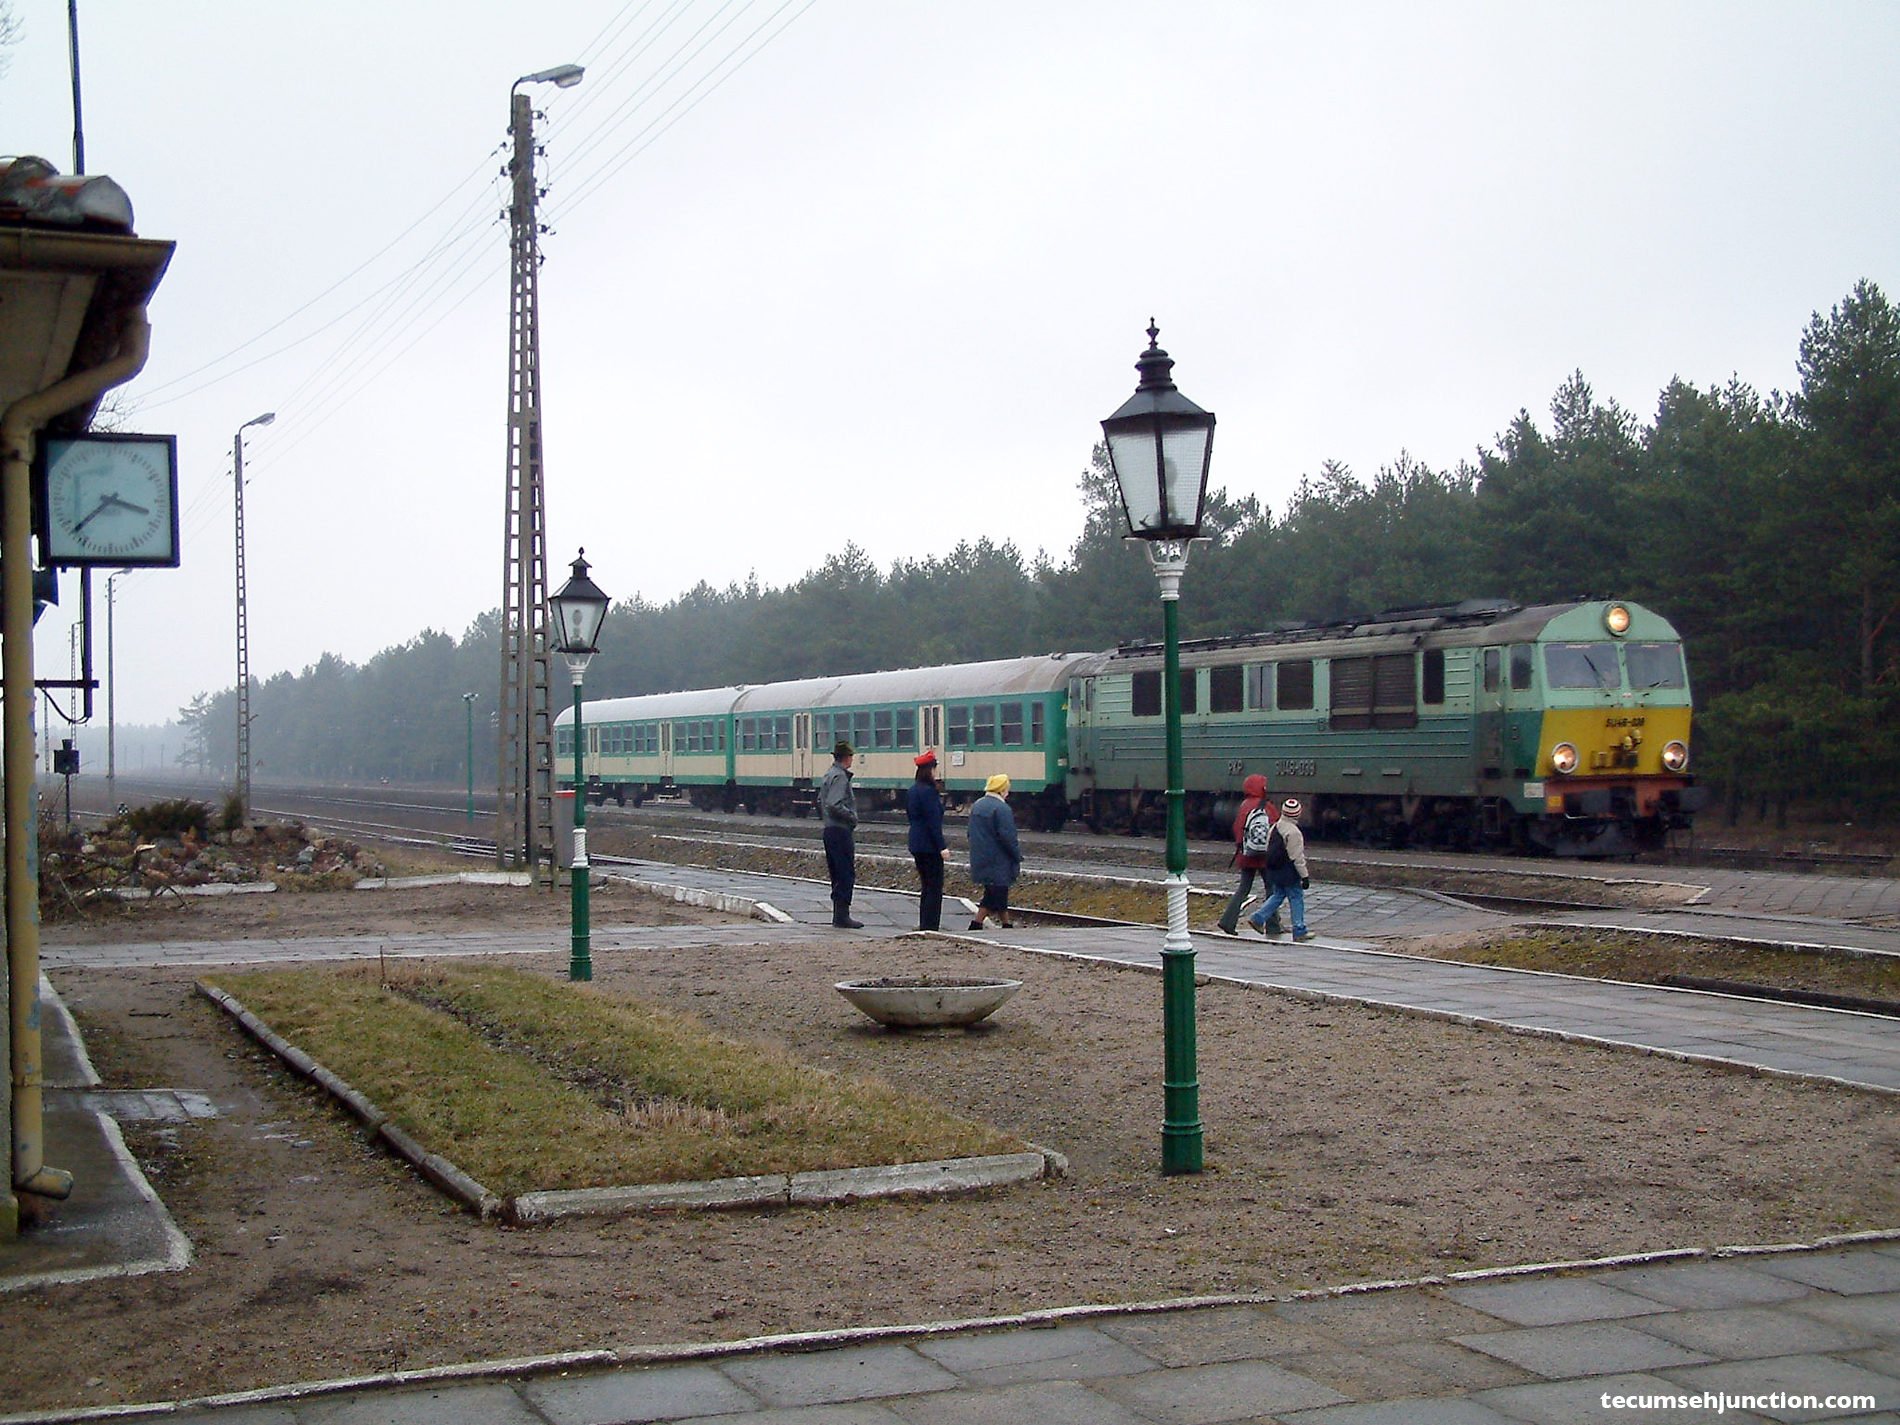 Kościerzyna-Wierzchucin train at Bąk